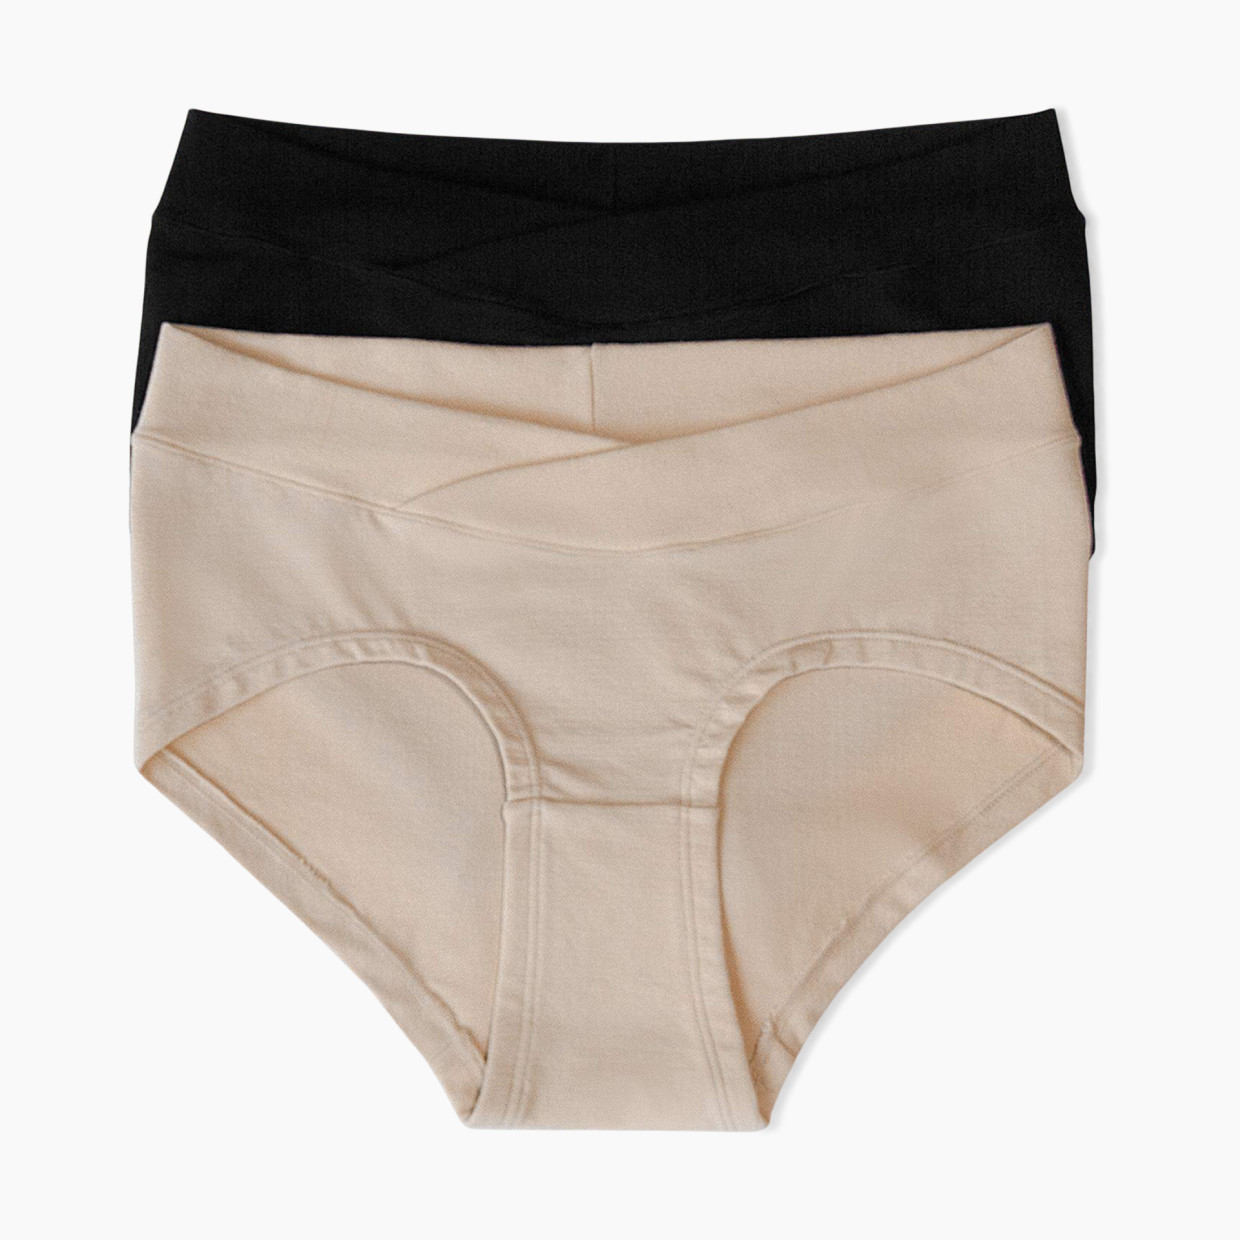 Kindred Bravely High Waist Postpartum Underwear & C-Section